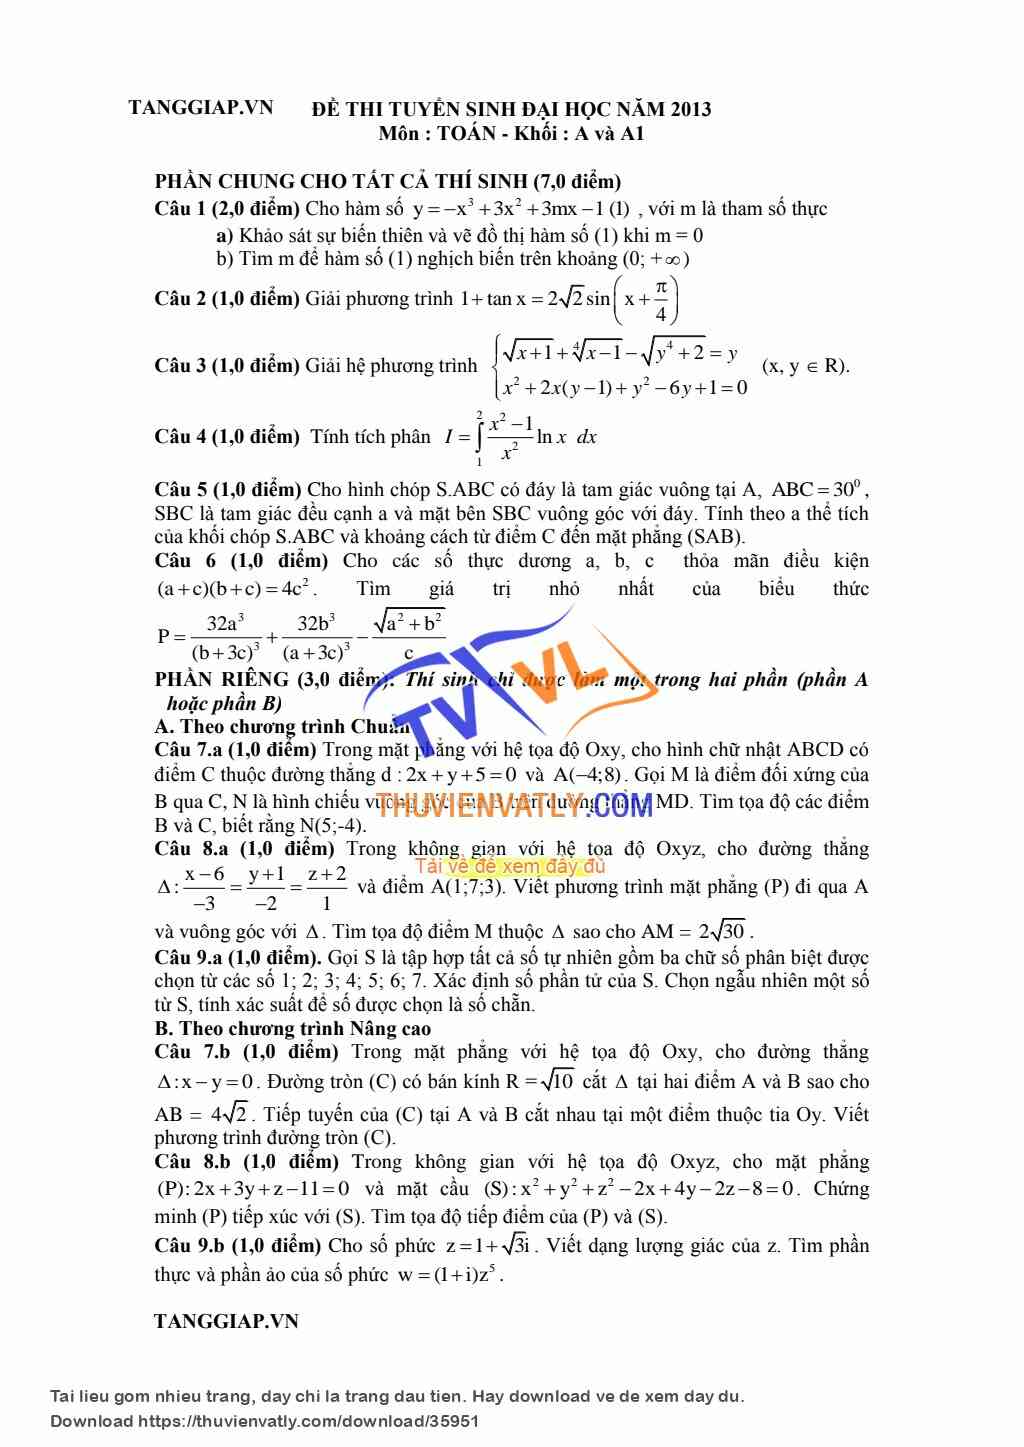 Lời giải chi tiết môn toán ĐH 2013 khối A; A1